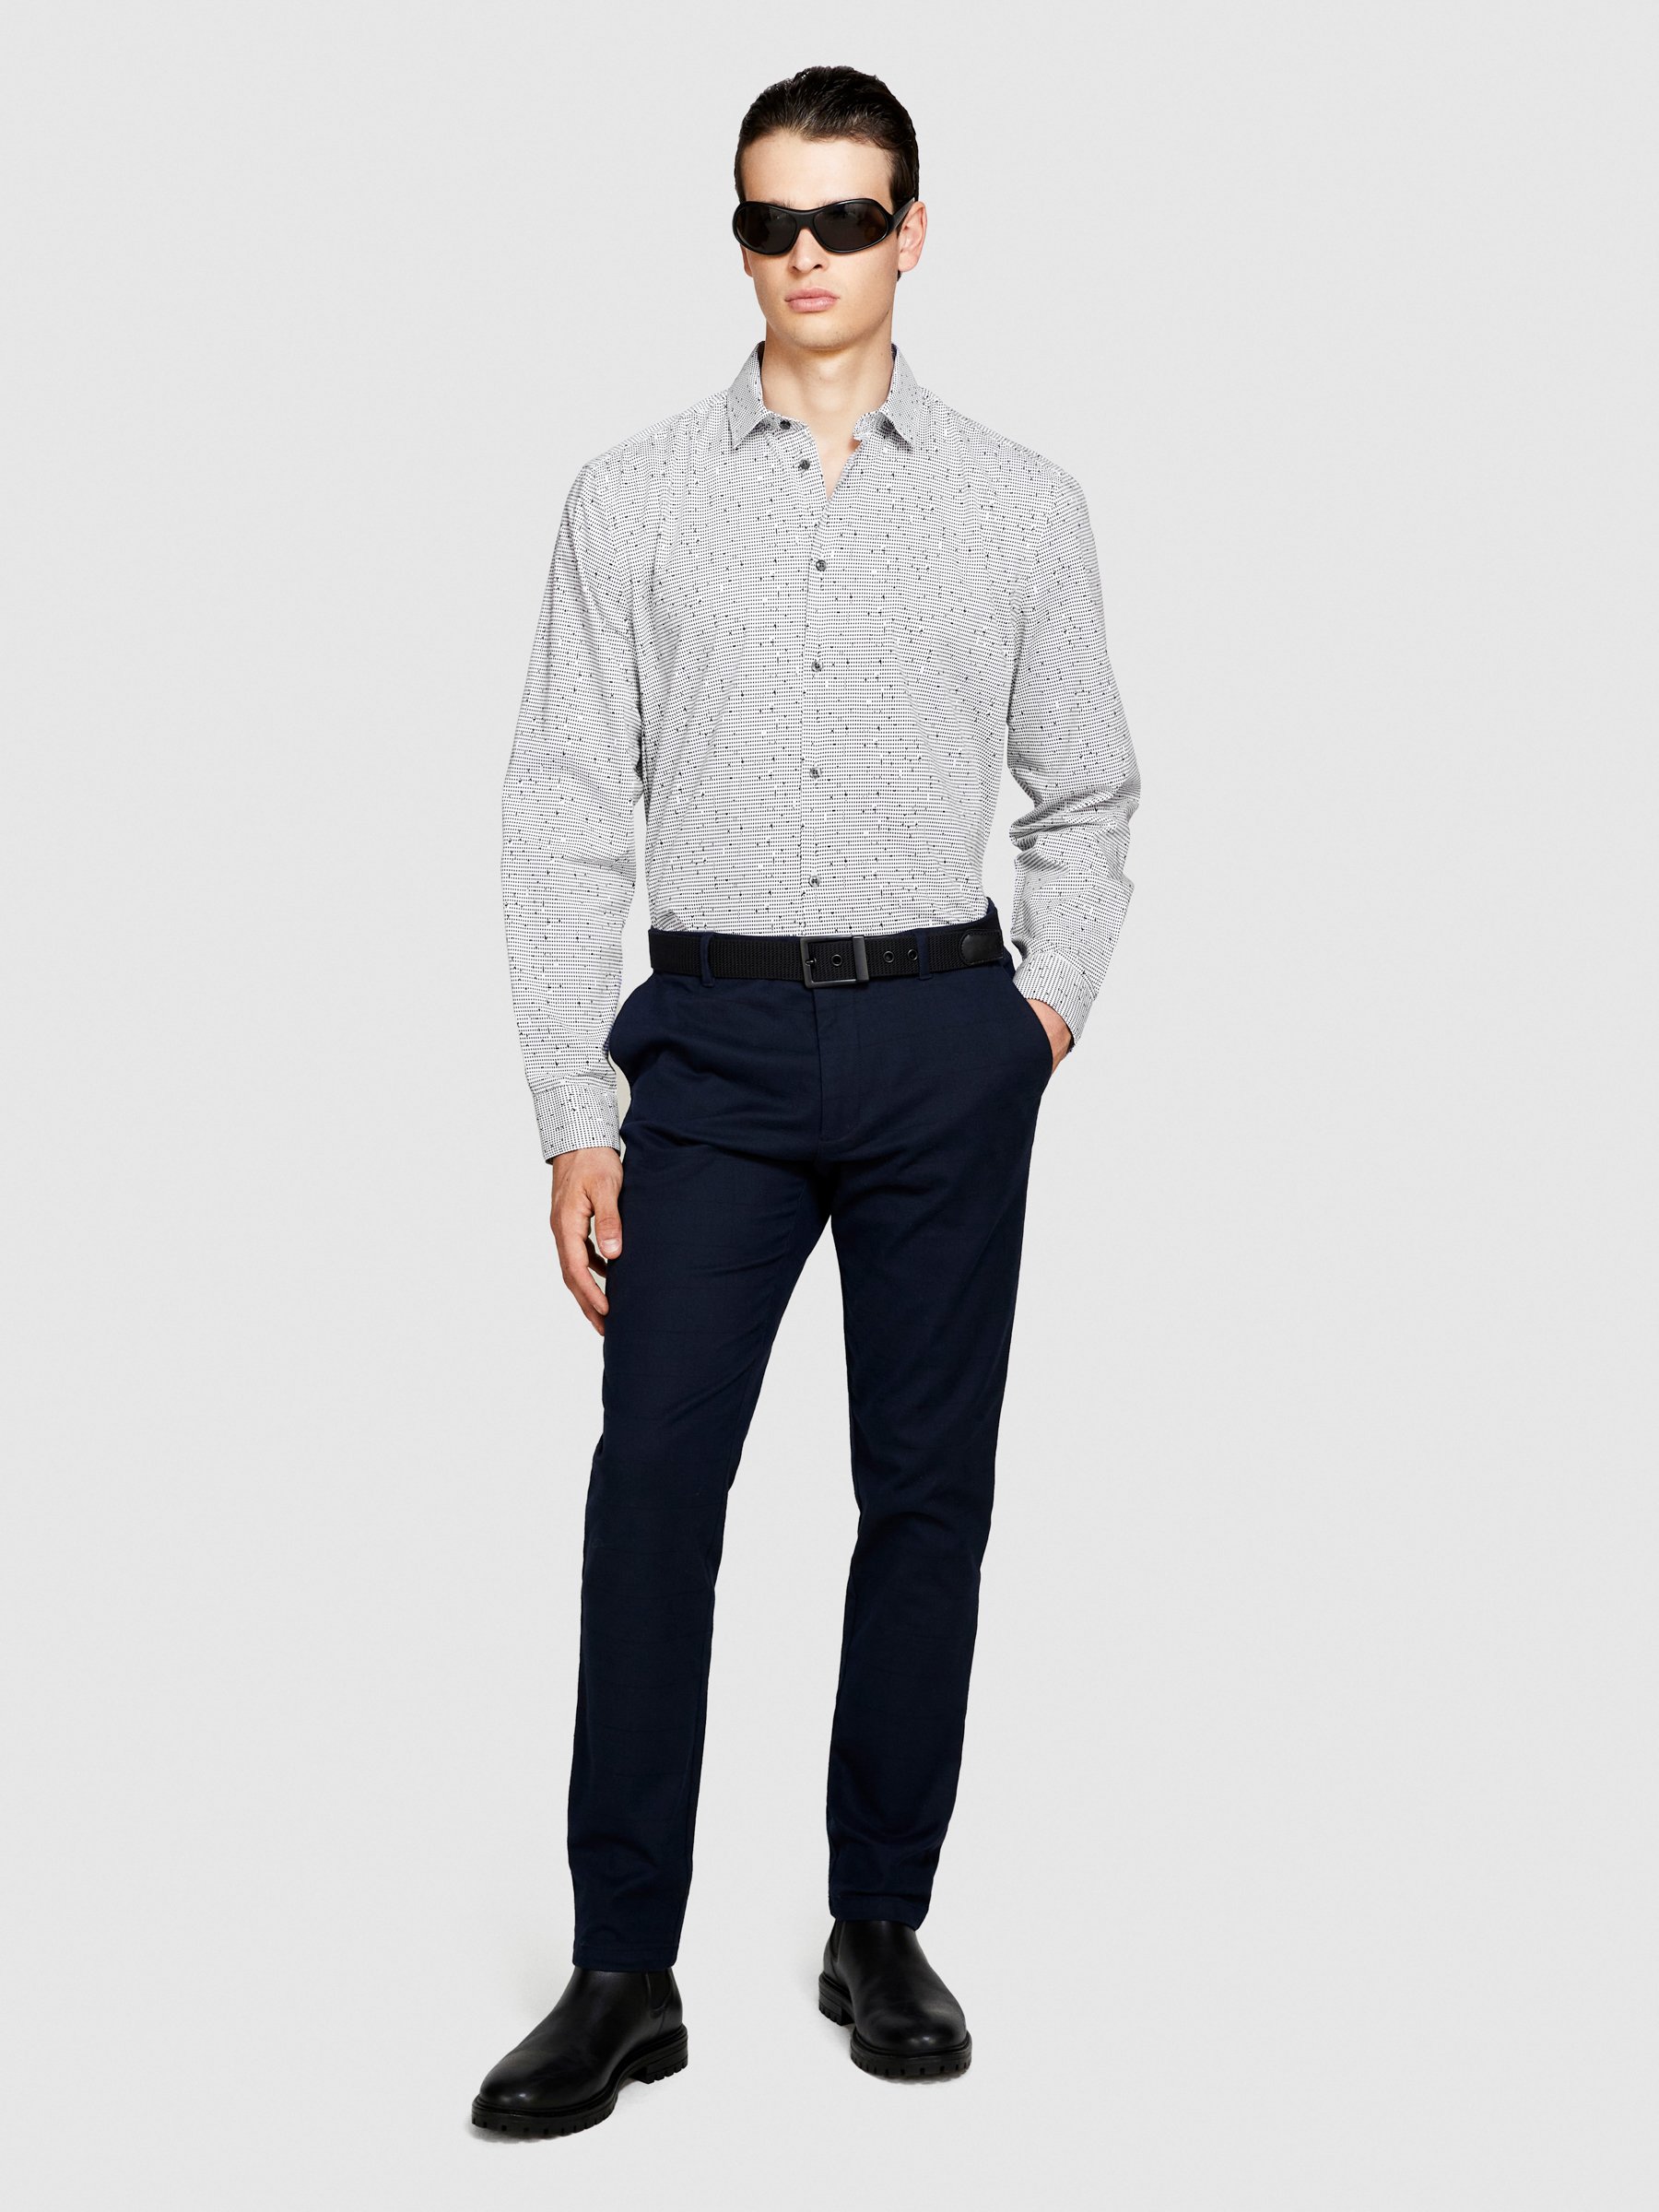 Sisley - Printed Shirt, Man, Gray, Size: EL